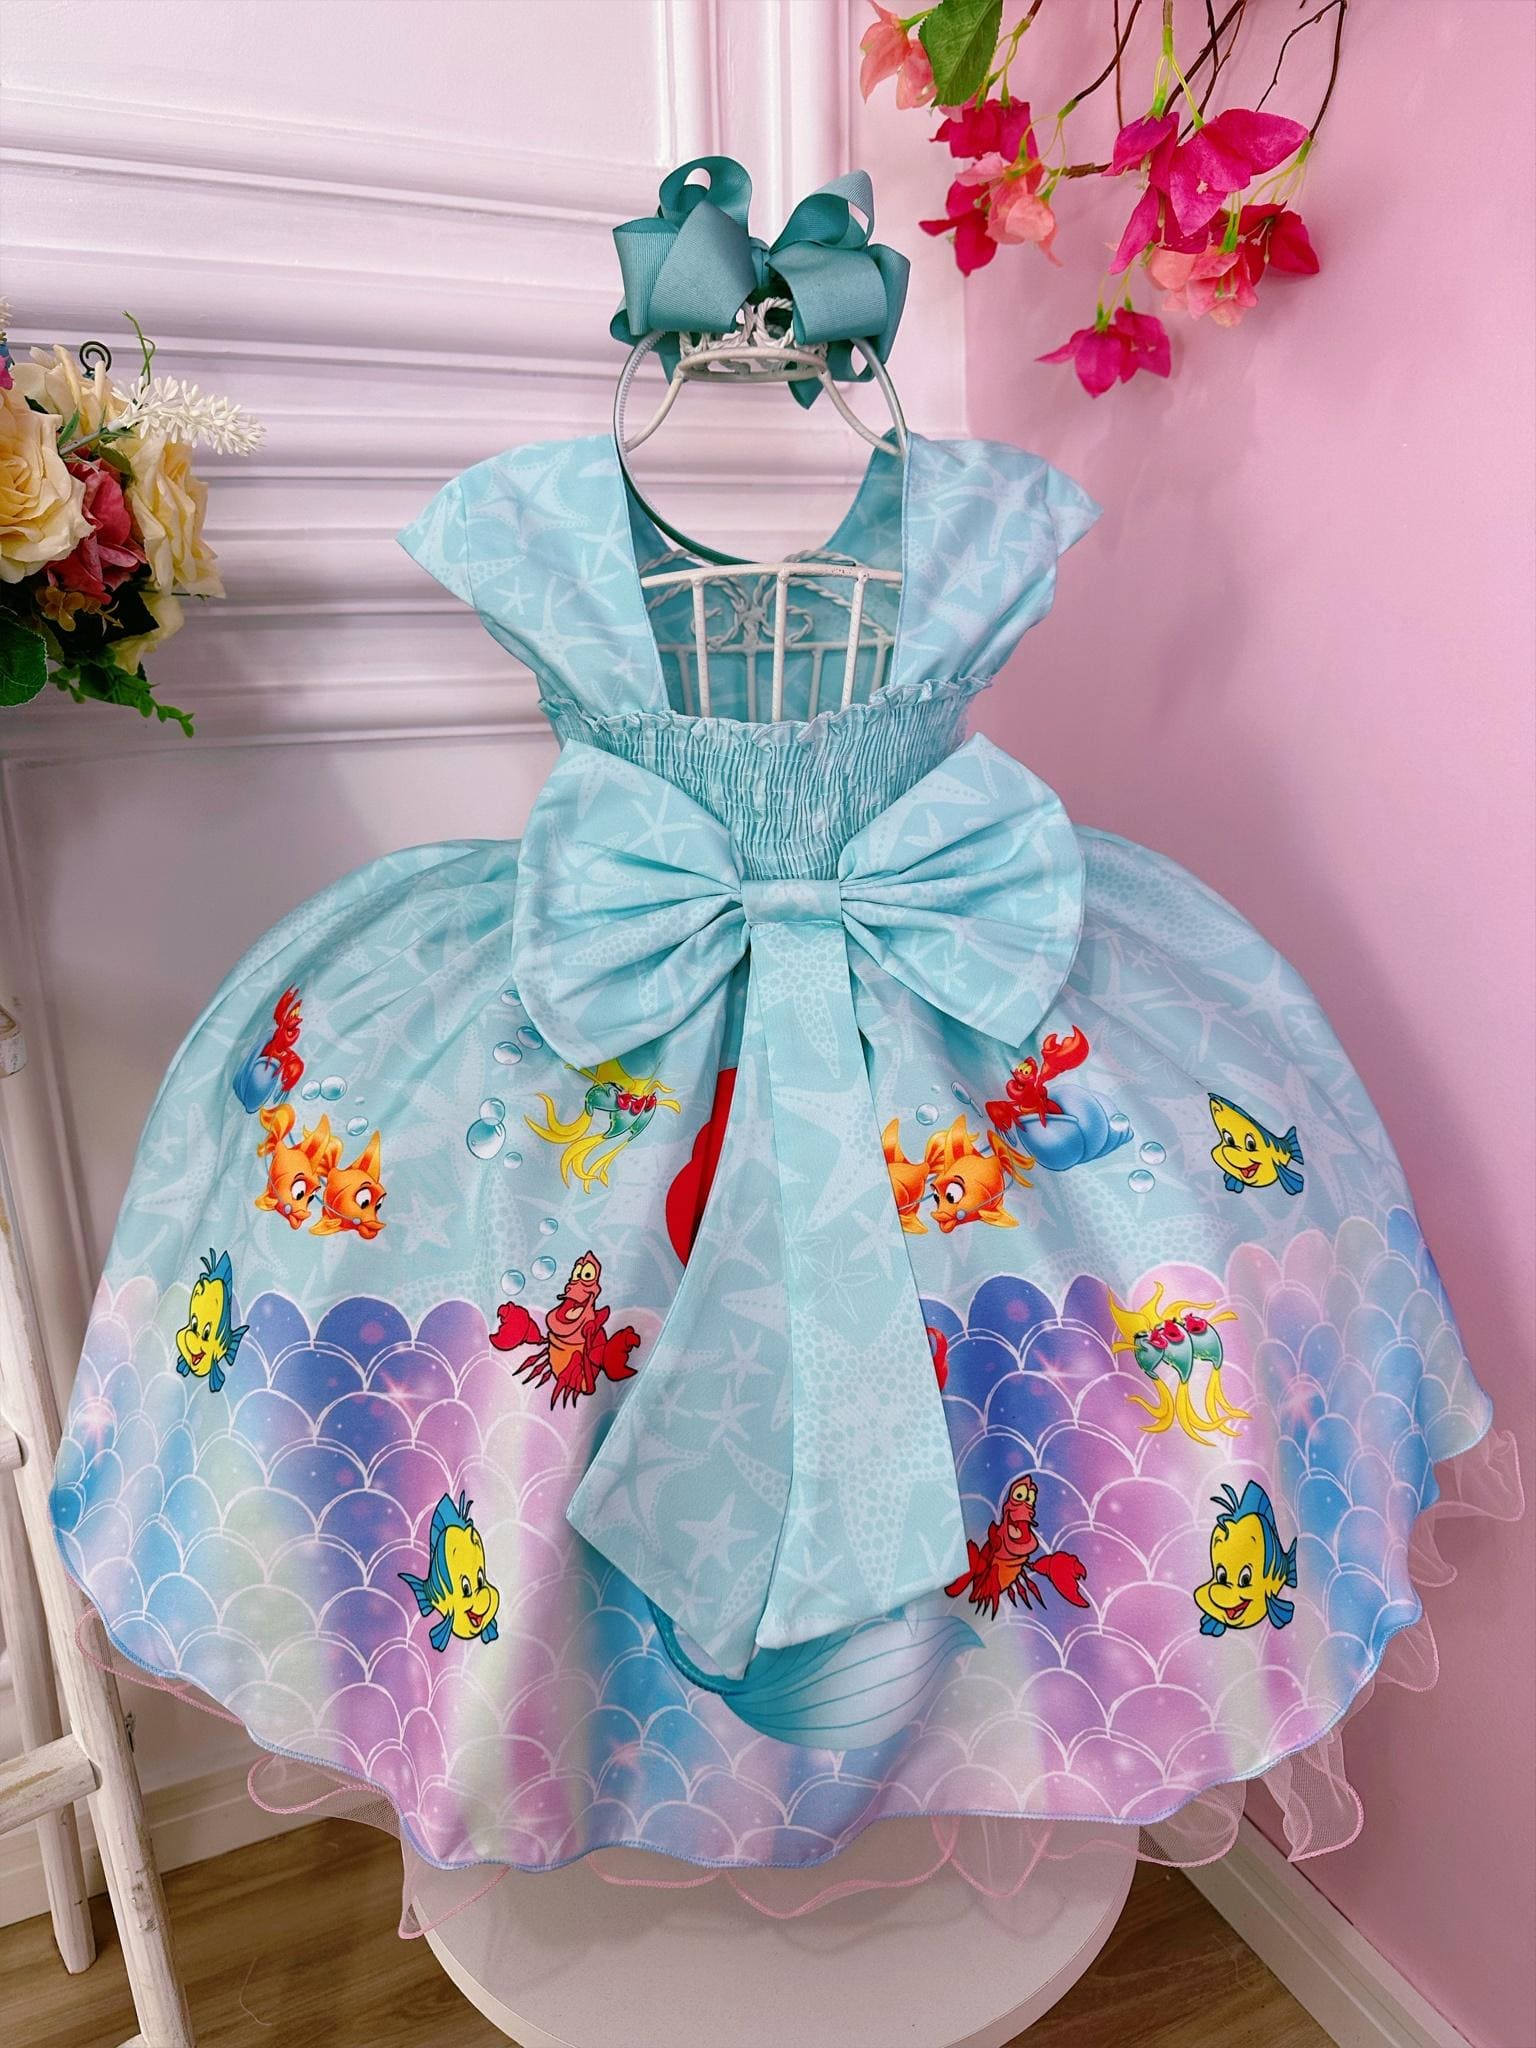 Fantasia de sereia para meninas, vestido infantil de ariel, conjunto